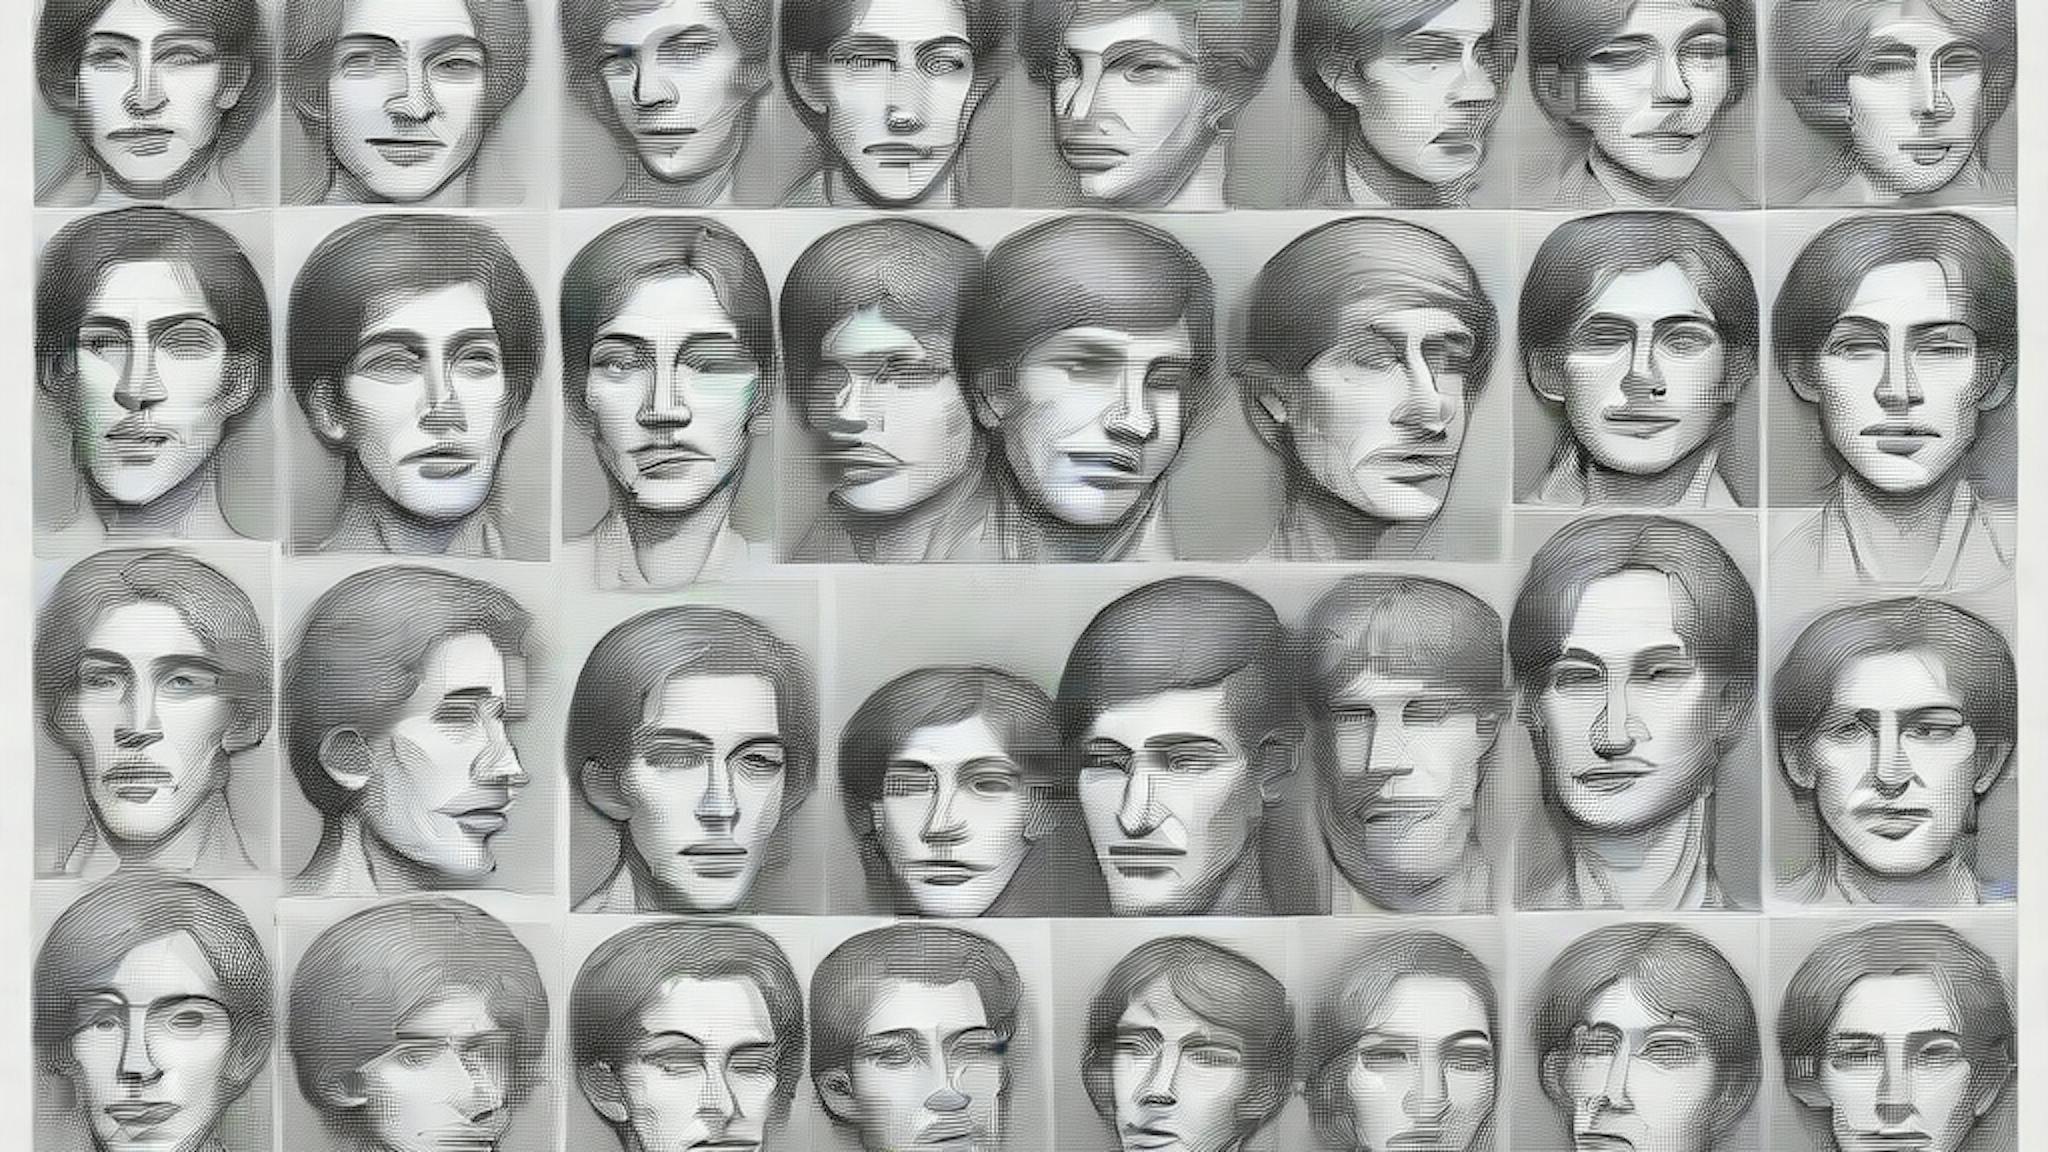 featured image - Tìm kiếm khuôn mặt do AI tạo ra trong thế giới hoang dã: Tóm tắt và giới thiệu